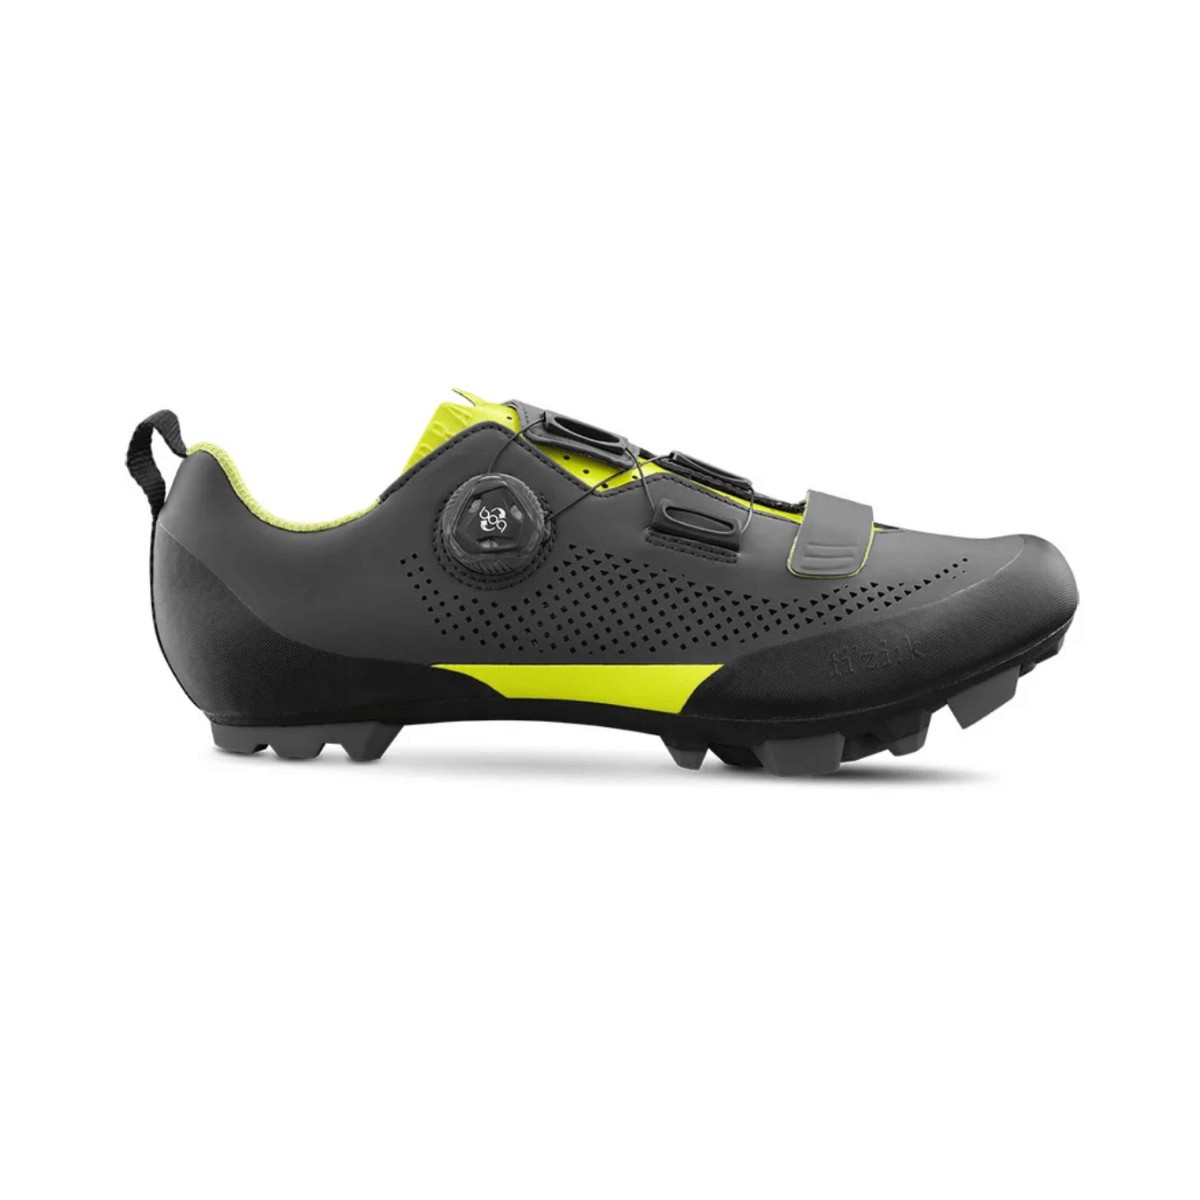 Fizik Terra X5 shoes color Gray Yellow Fluor, Size 42 - EUR